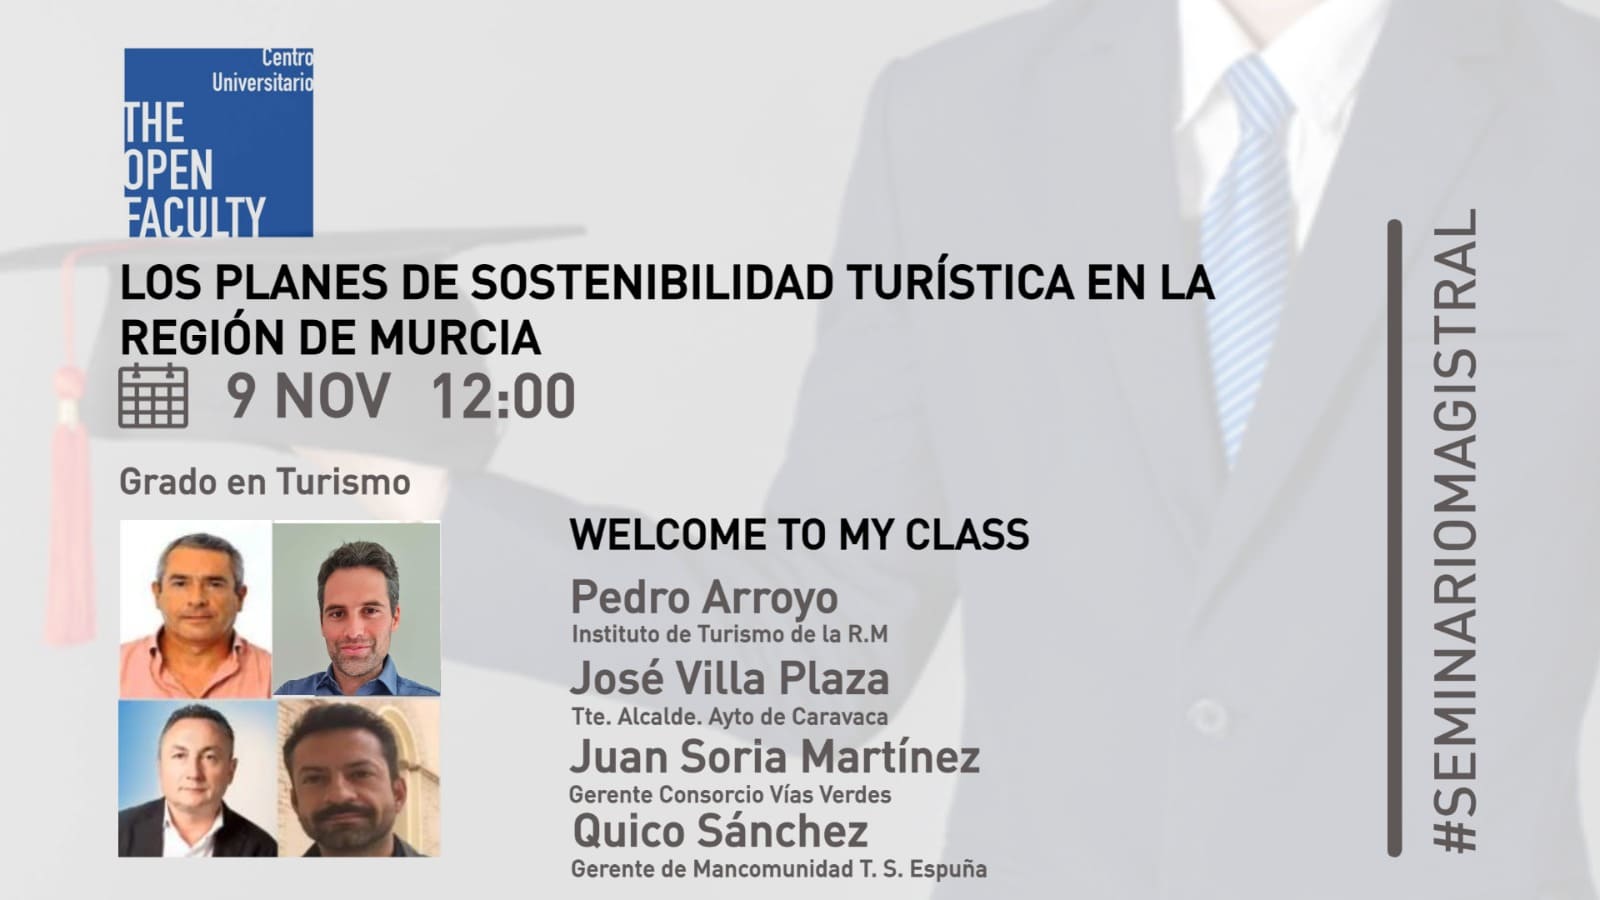 El Centro Universitario The Open Faculty prepara un seminario sobre los planes de sostenibilidad turística en la Región de Murcia